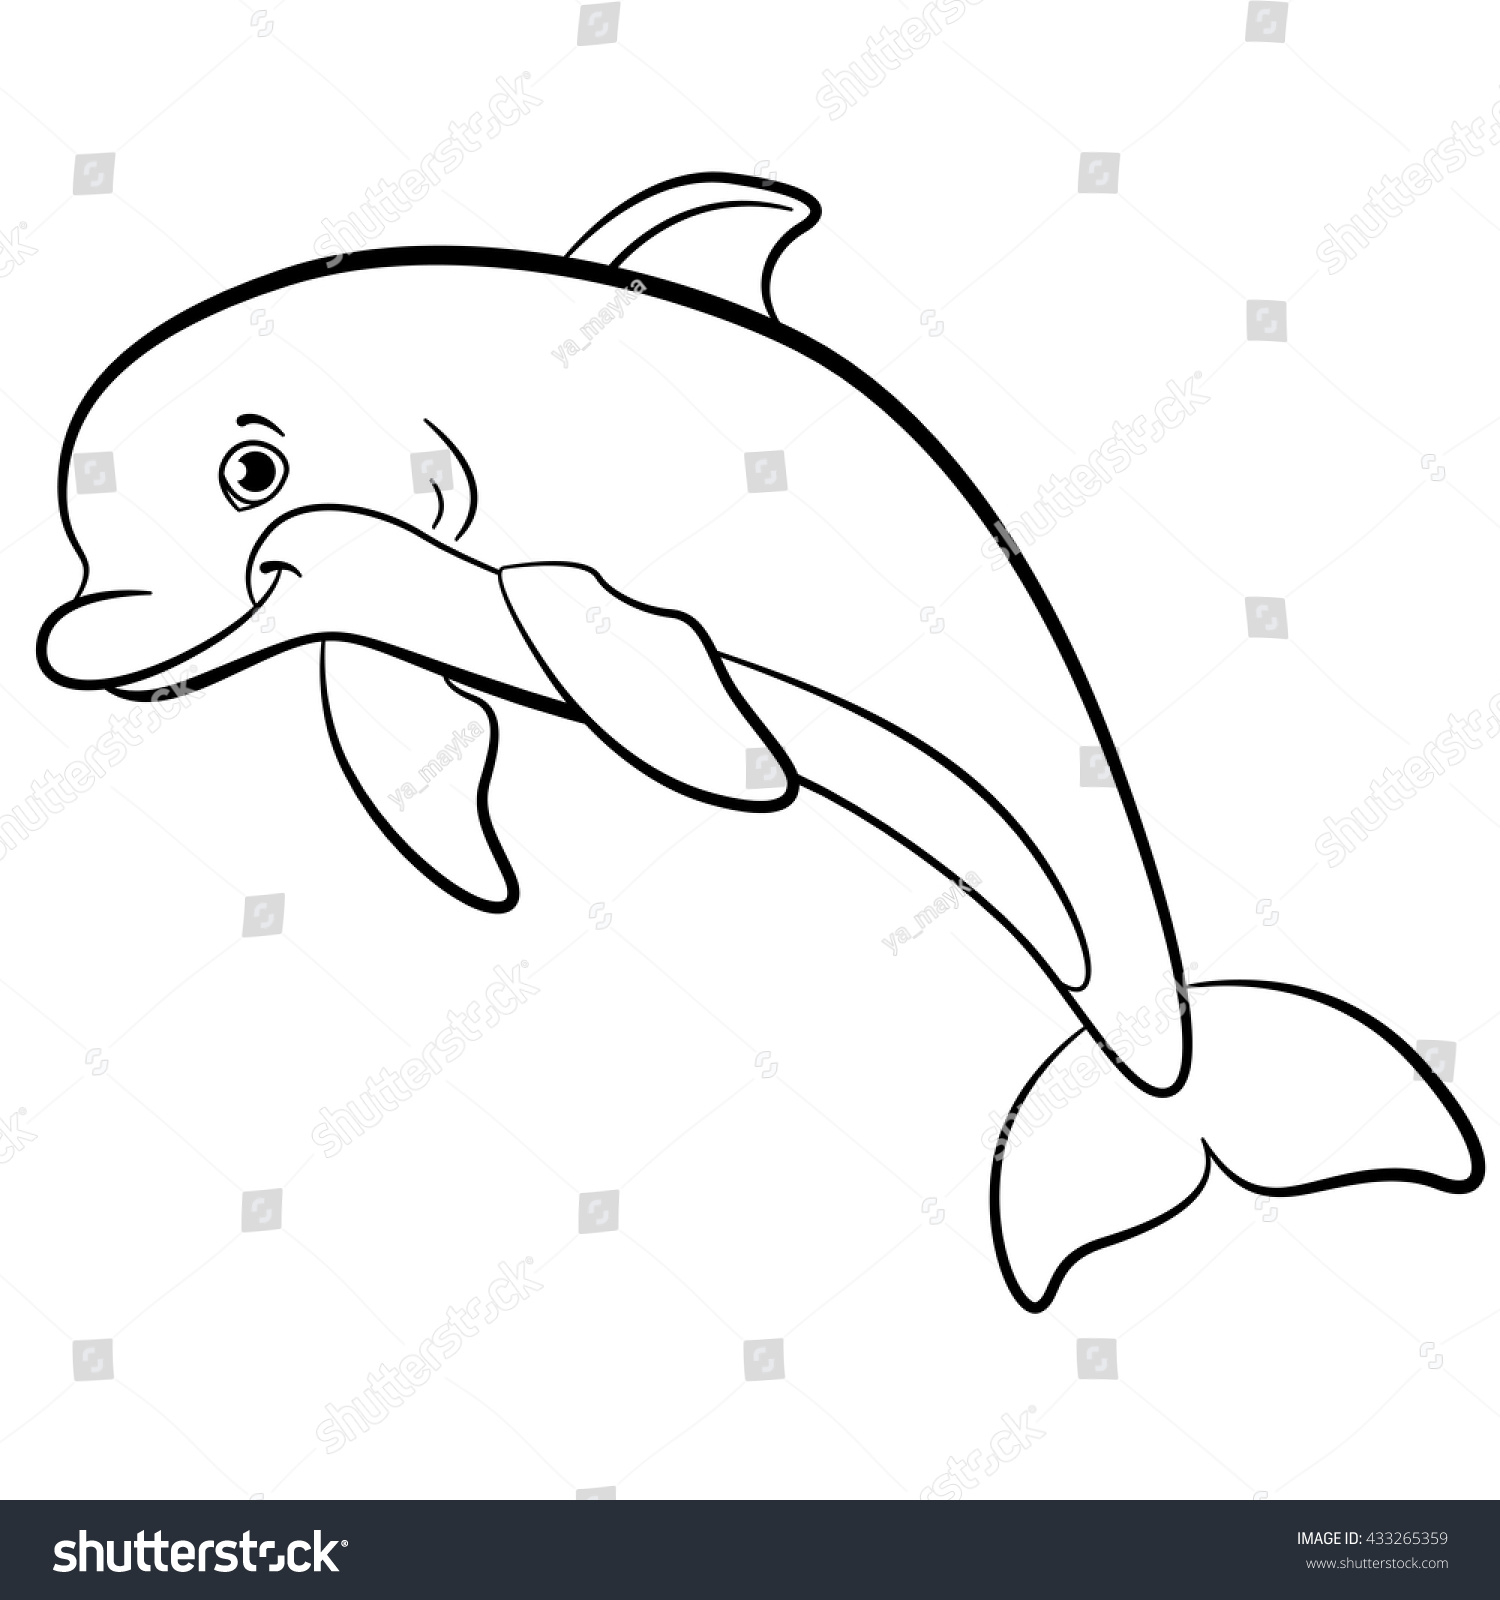 Дельфин рисунок для детей черно белый